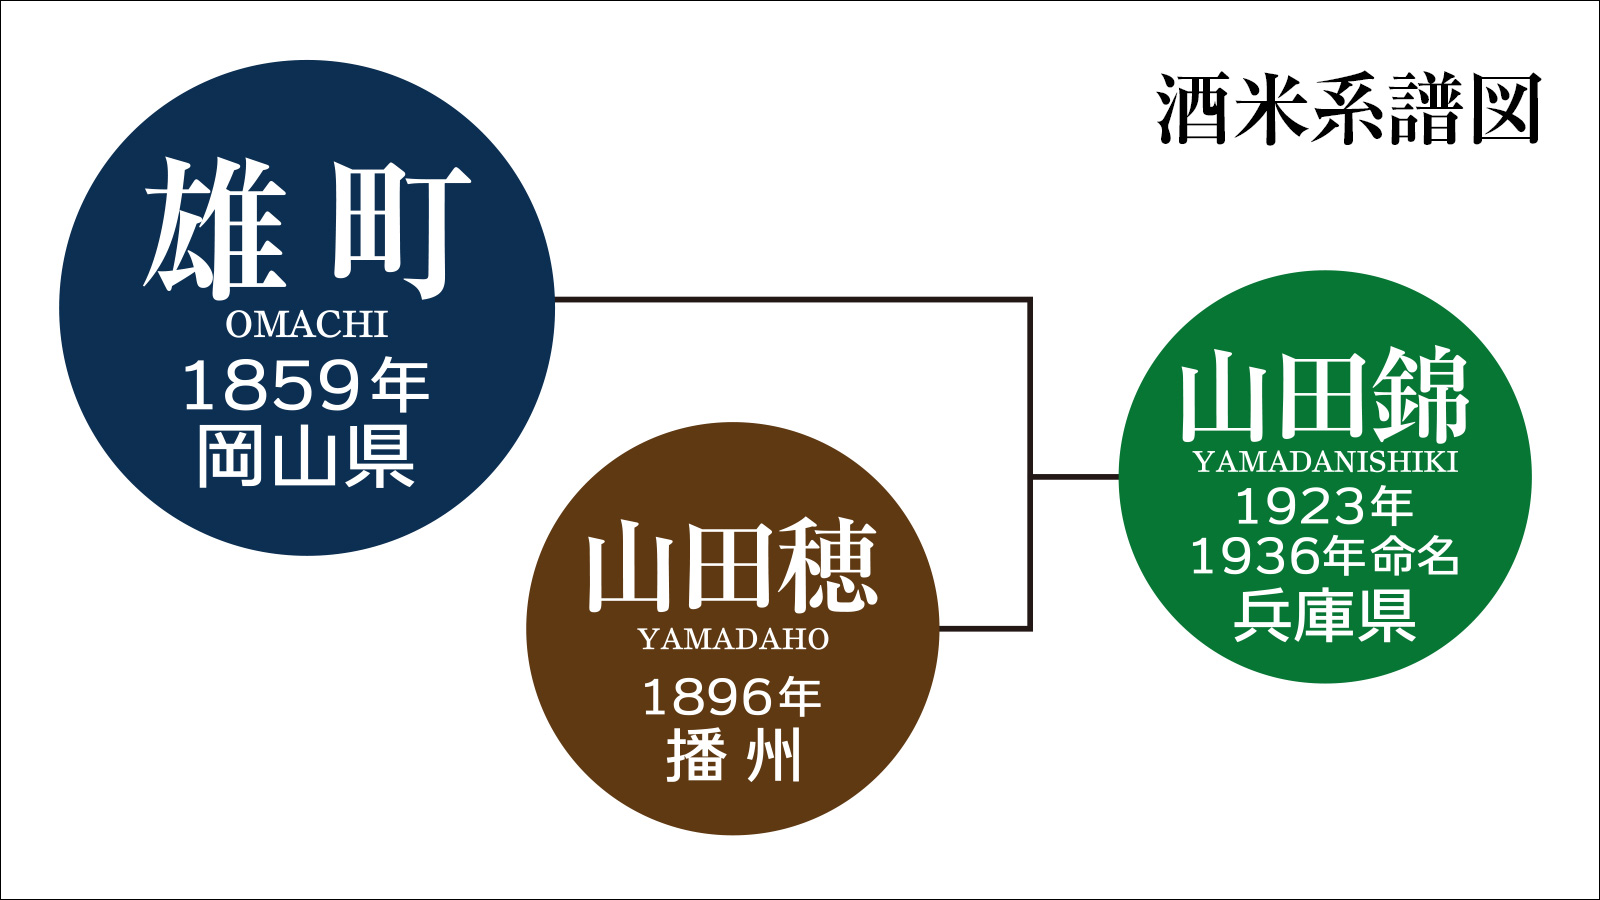 「雄町」は、山田錦の親にあたる日本最古の混血のない原生種